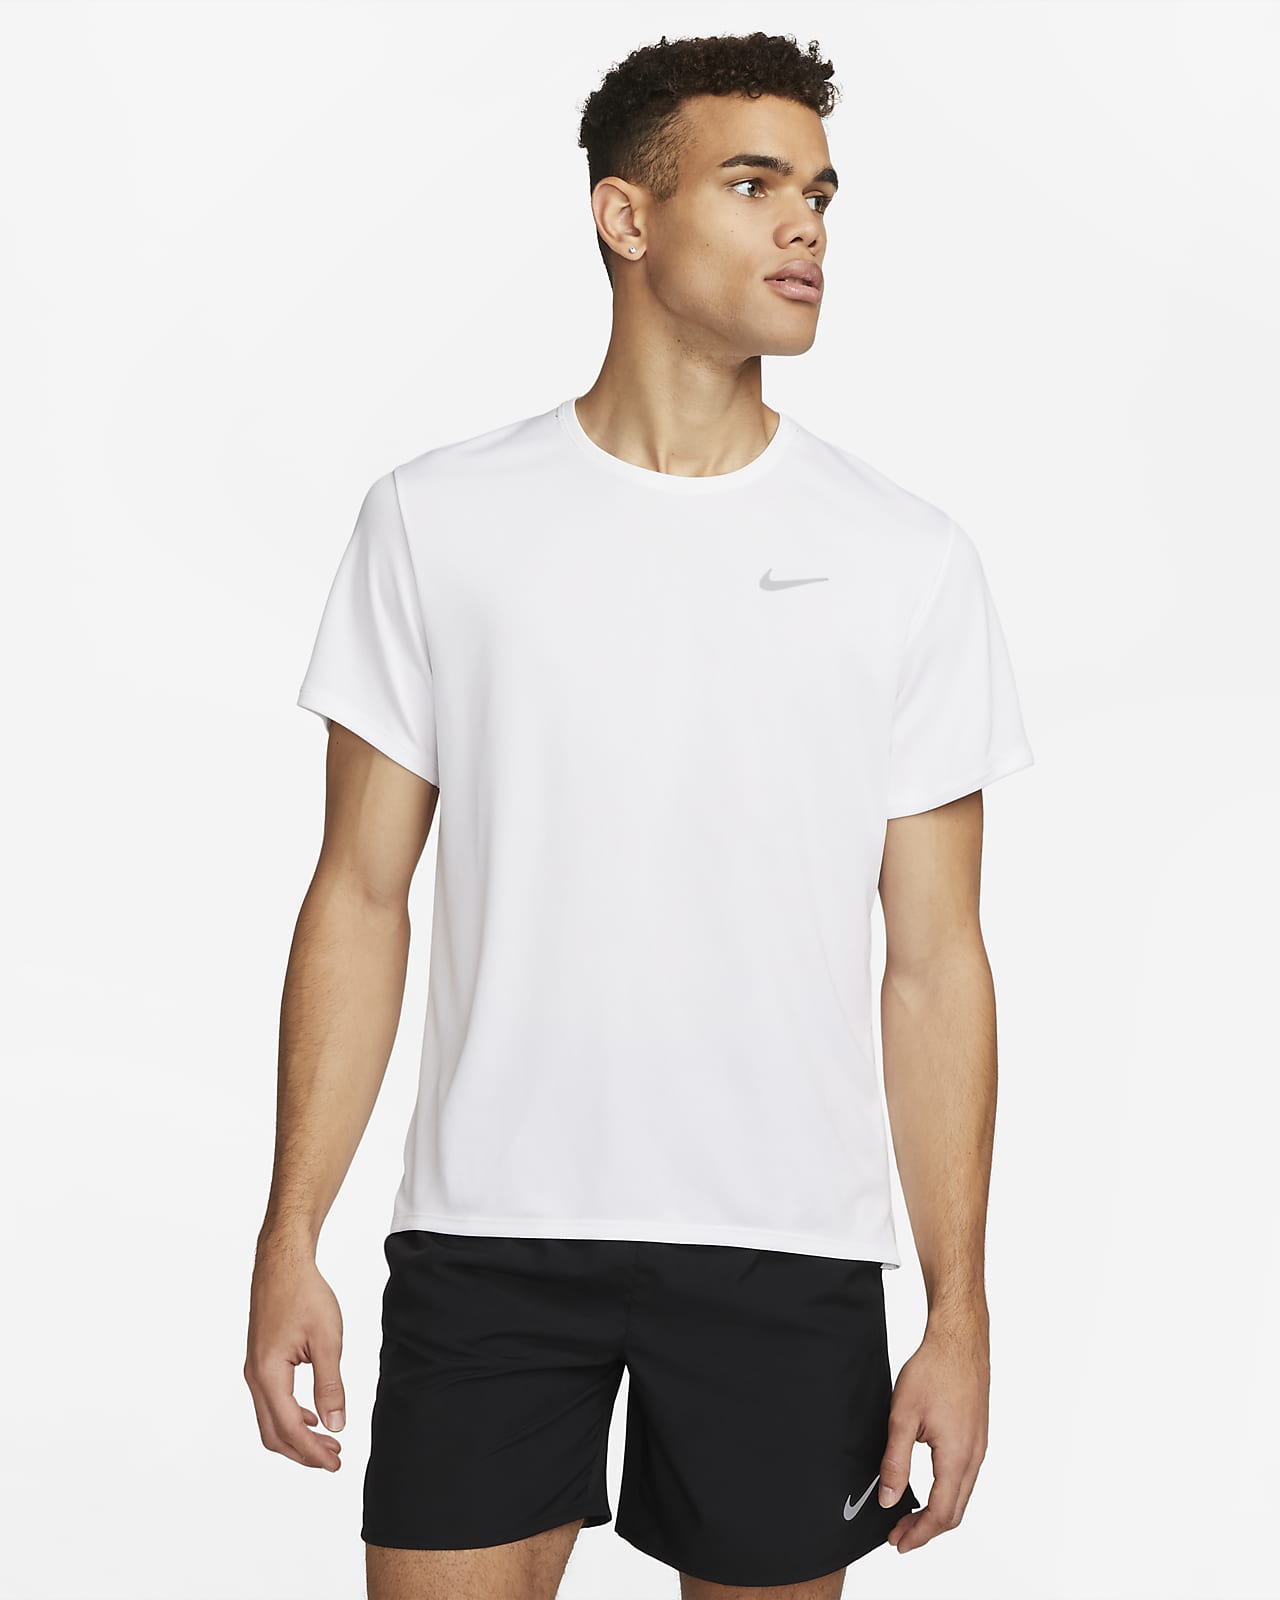 Ανδρική κοντομάνικη μπλούζα για τρέξιμο Dri-FIT UV Nike Miler